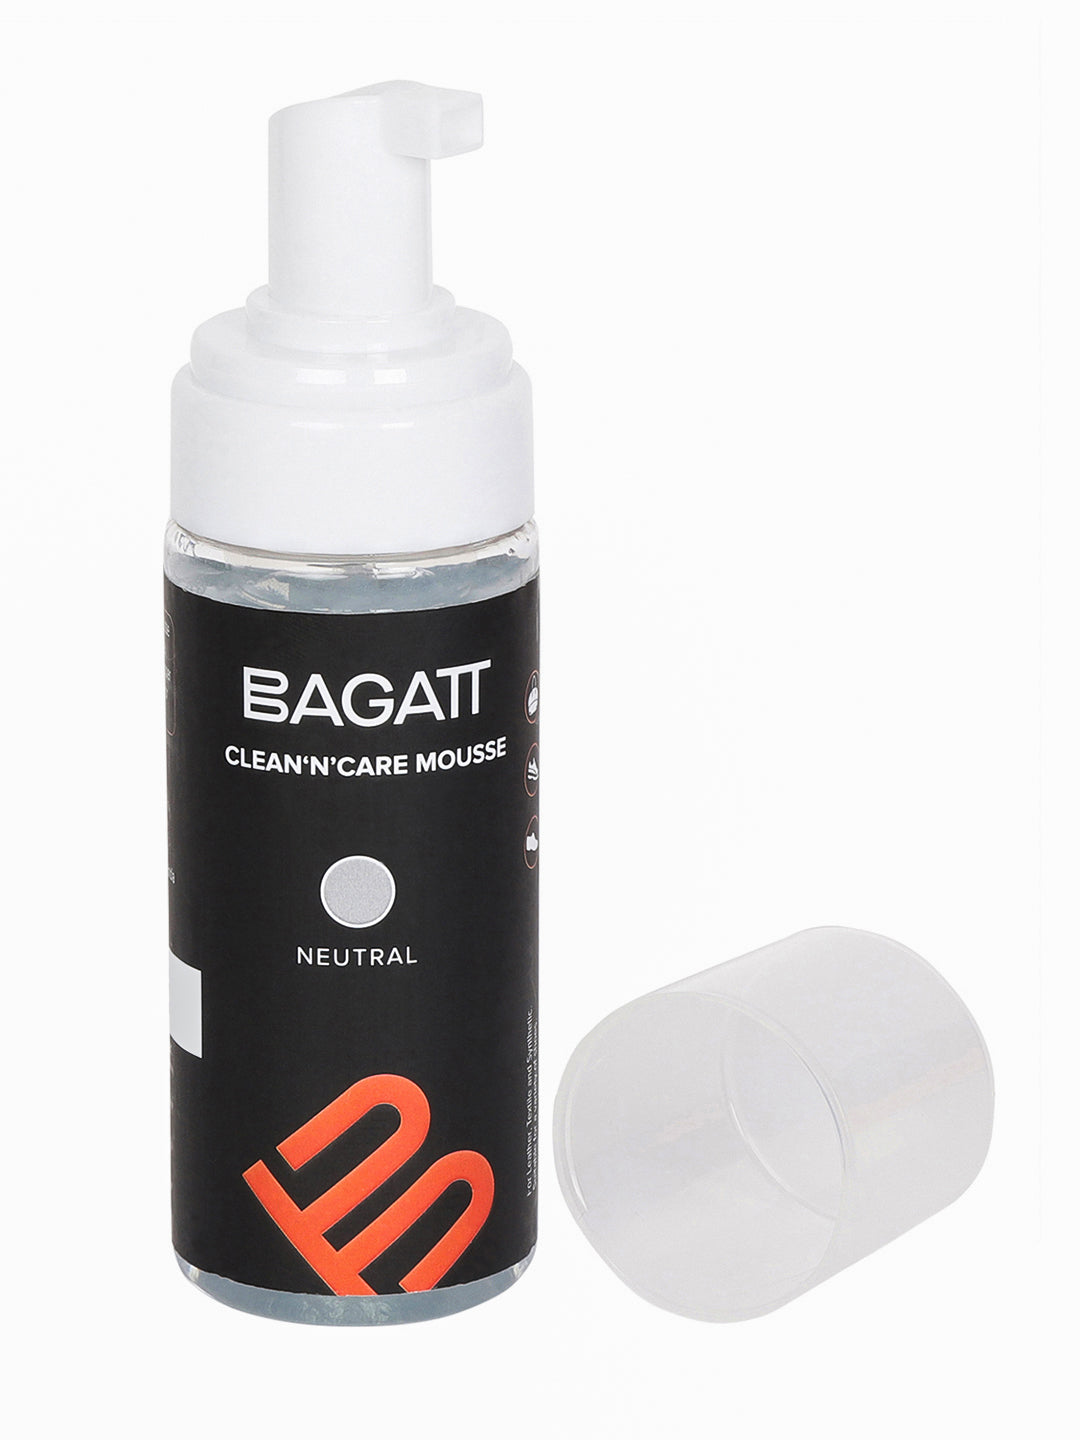 BAGATT Neutral Clean'N'Clear Mousse